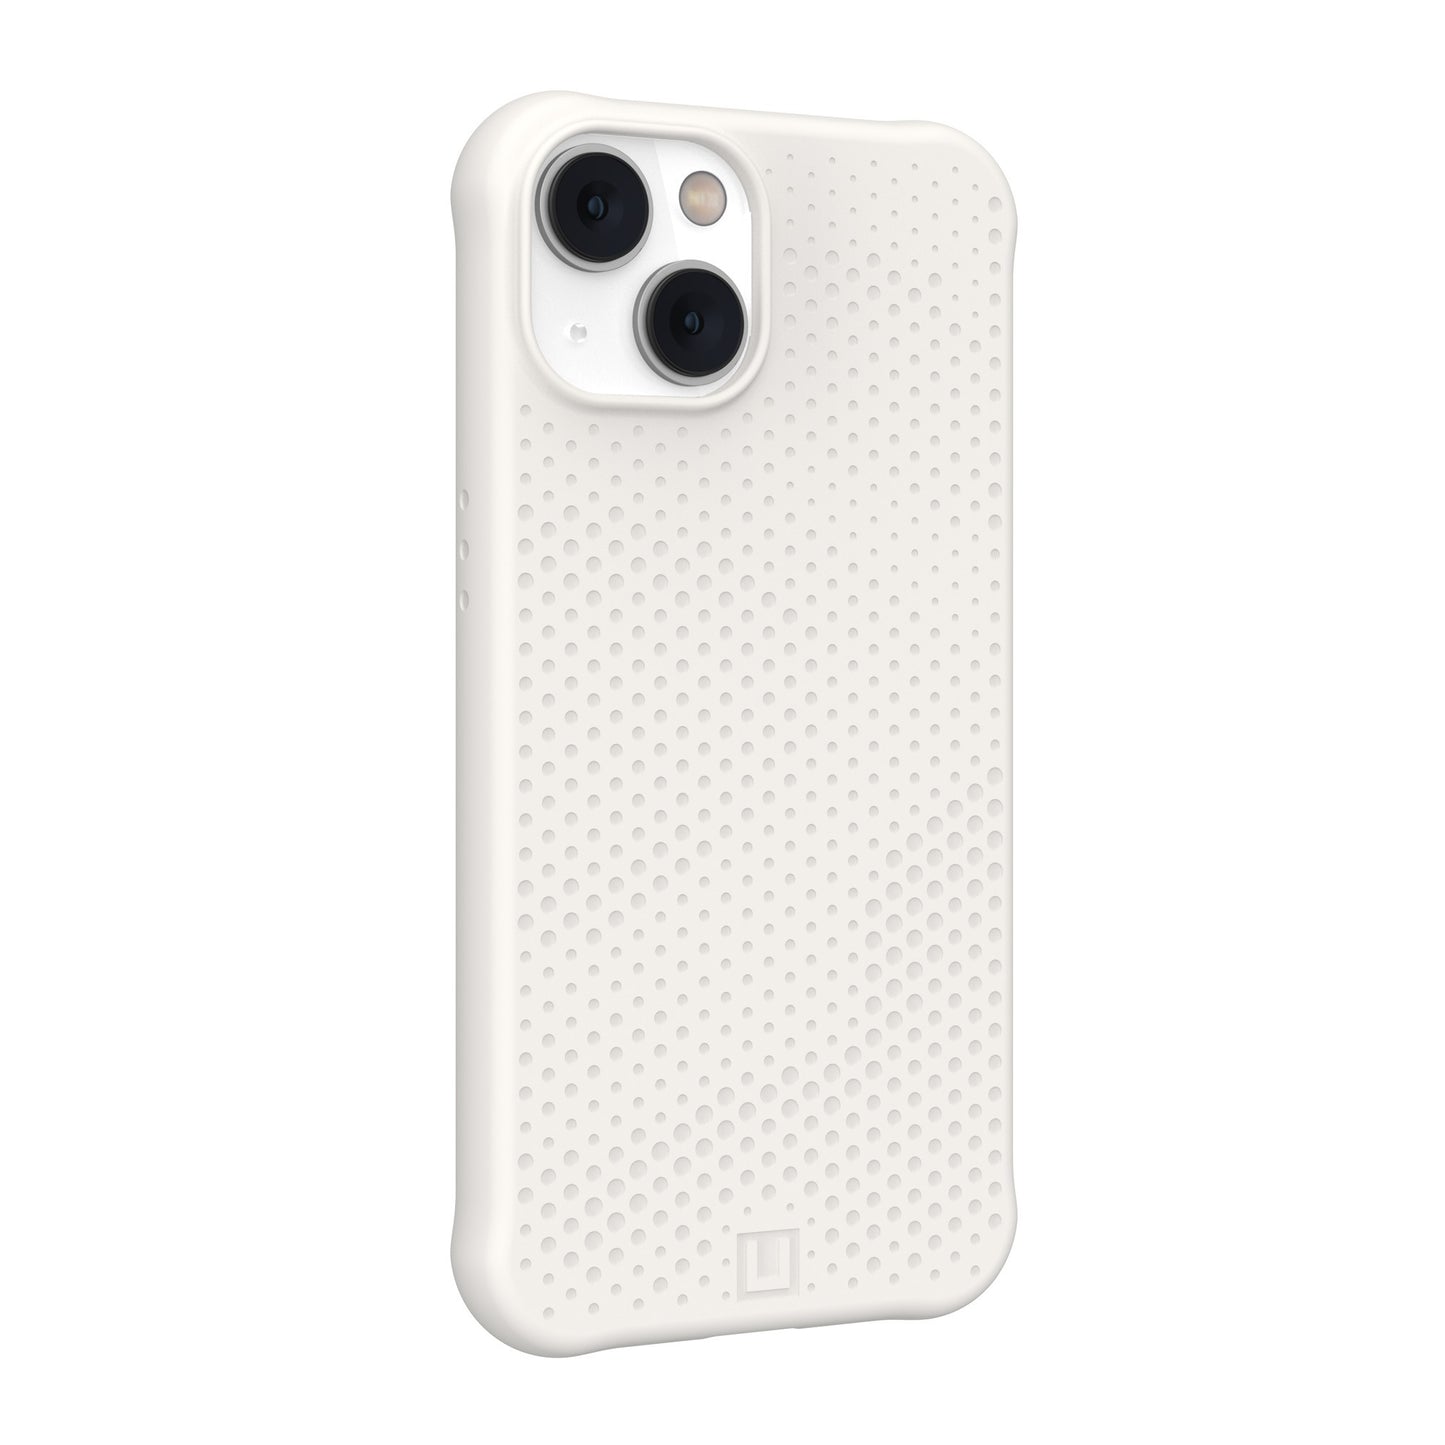 iPhone 14/13 UAG Dot MagSafe Case - Marshmallow - 15-10162